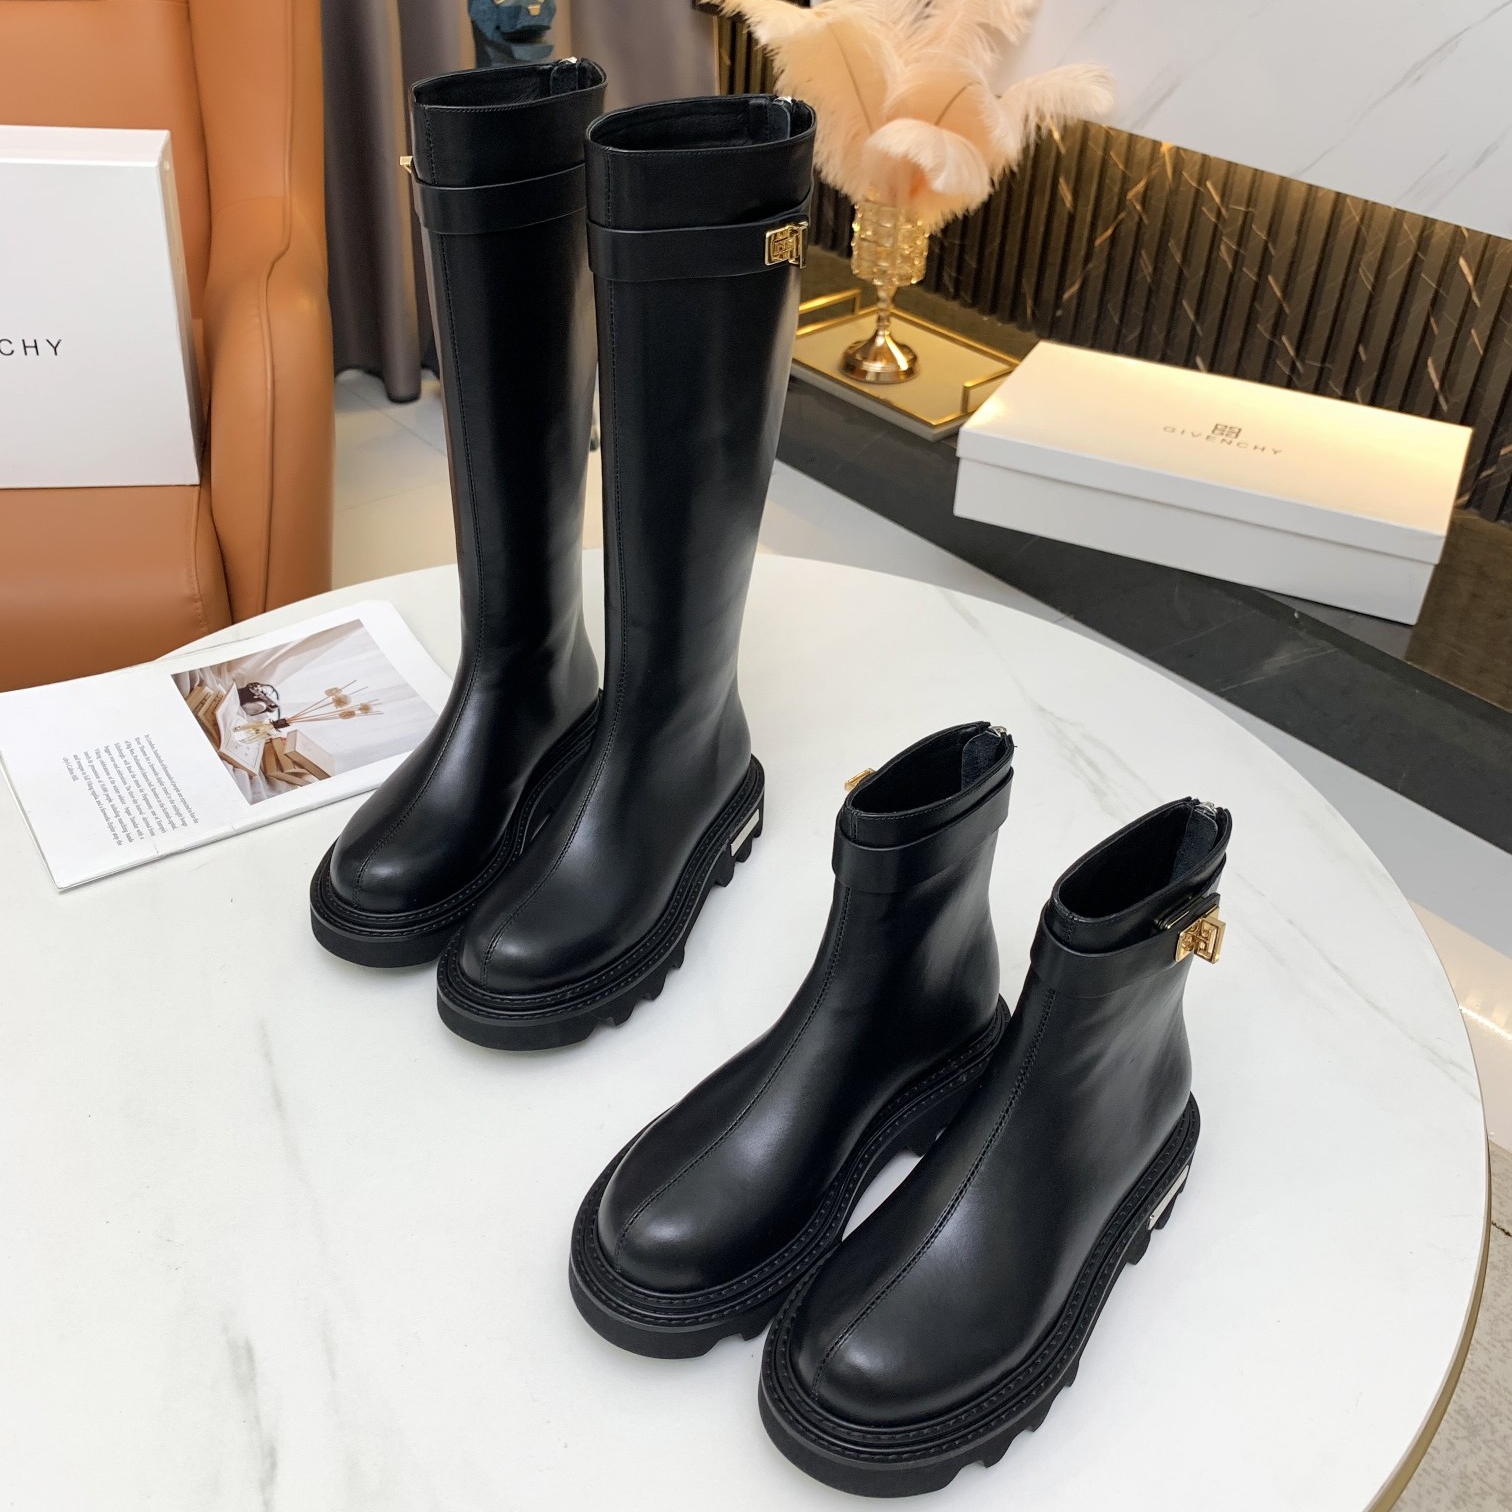 Добро се продава GivenChy моден луксузен познатиот бренд во Милано Модната недела на женските чевли и лажни дизајнерски чевли, исто така, брендирани потпетици